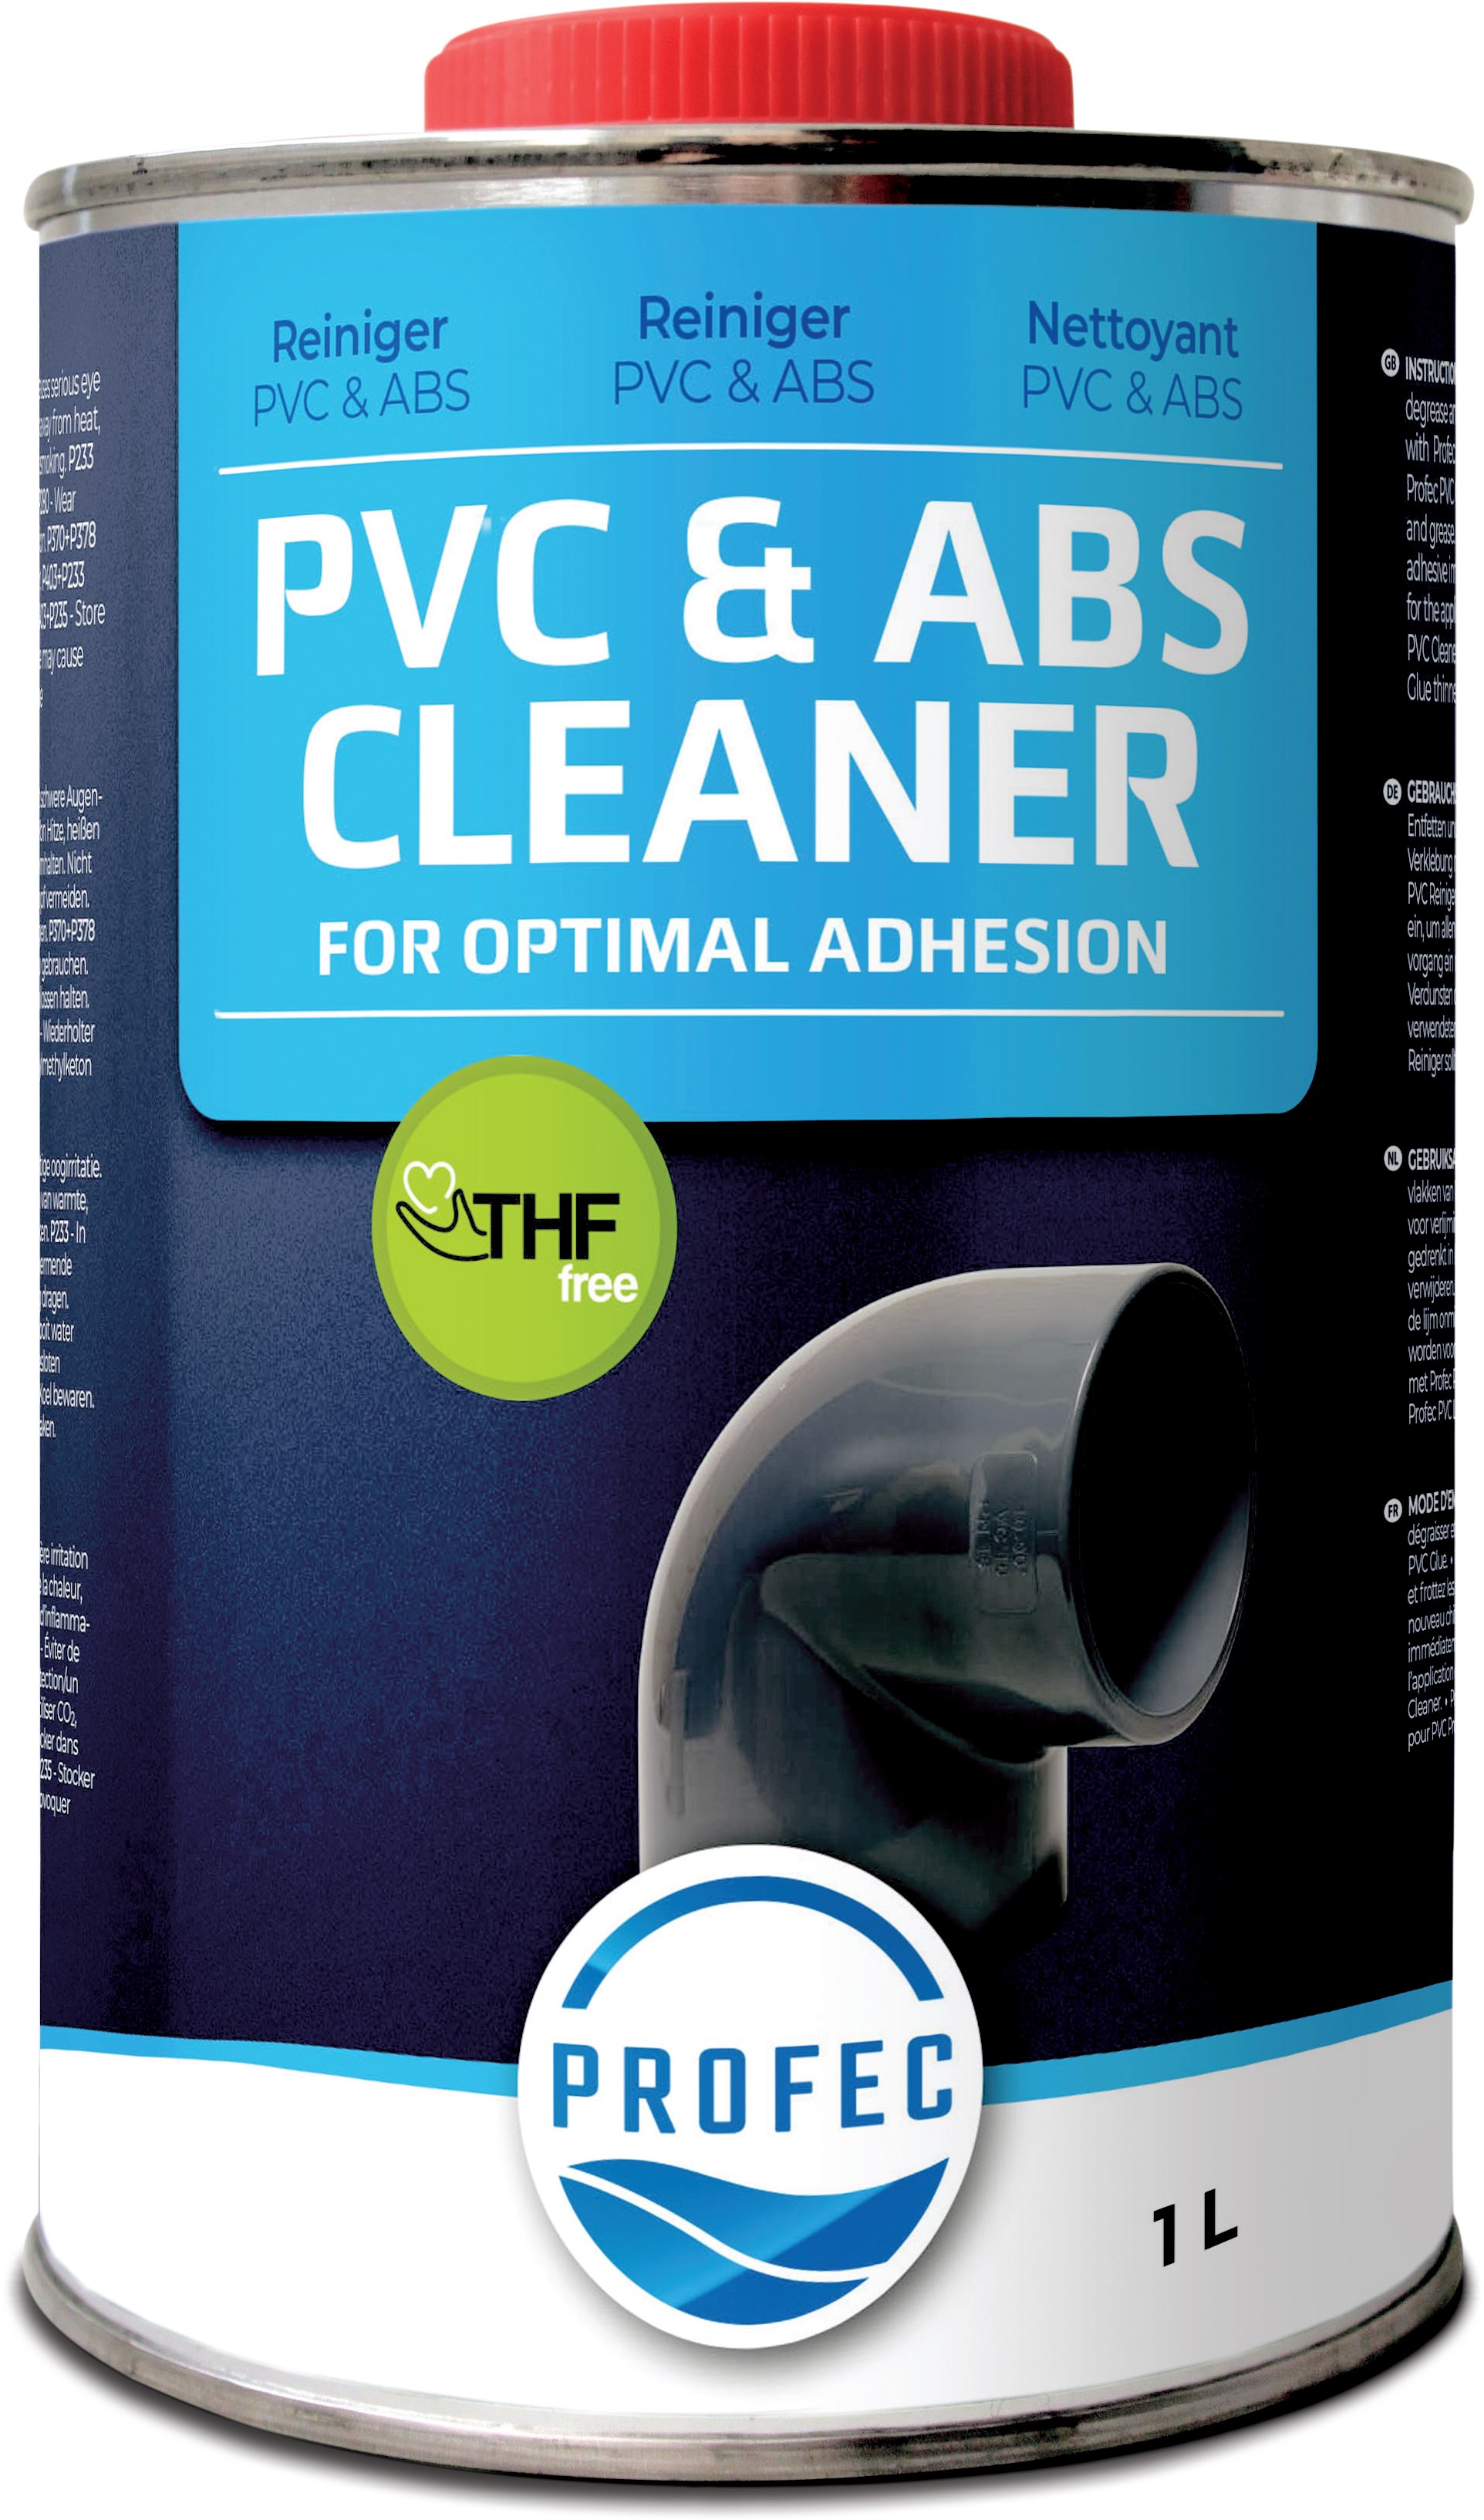 Profec PVC & ABS reiniger 0,25ltr type label EN/DE/NL/FR